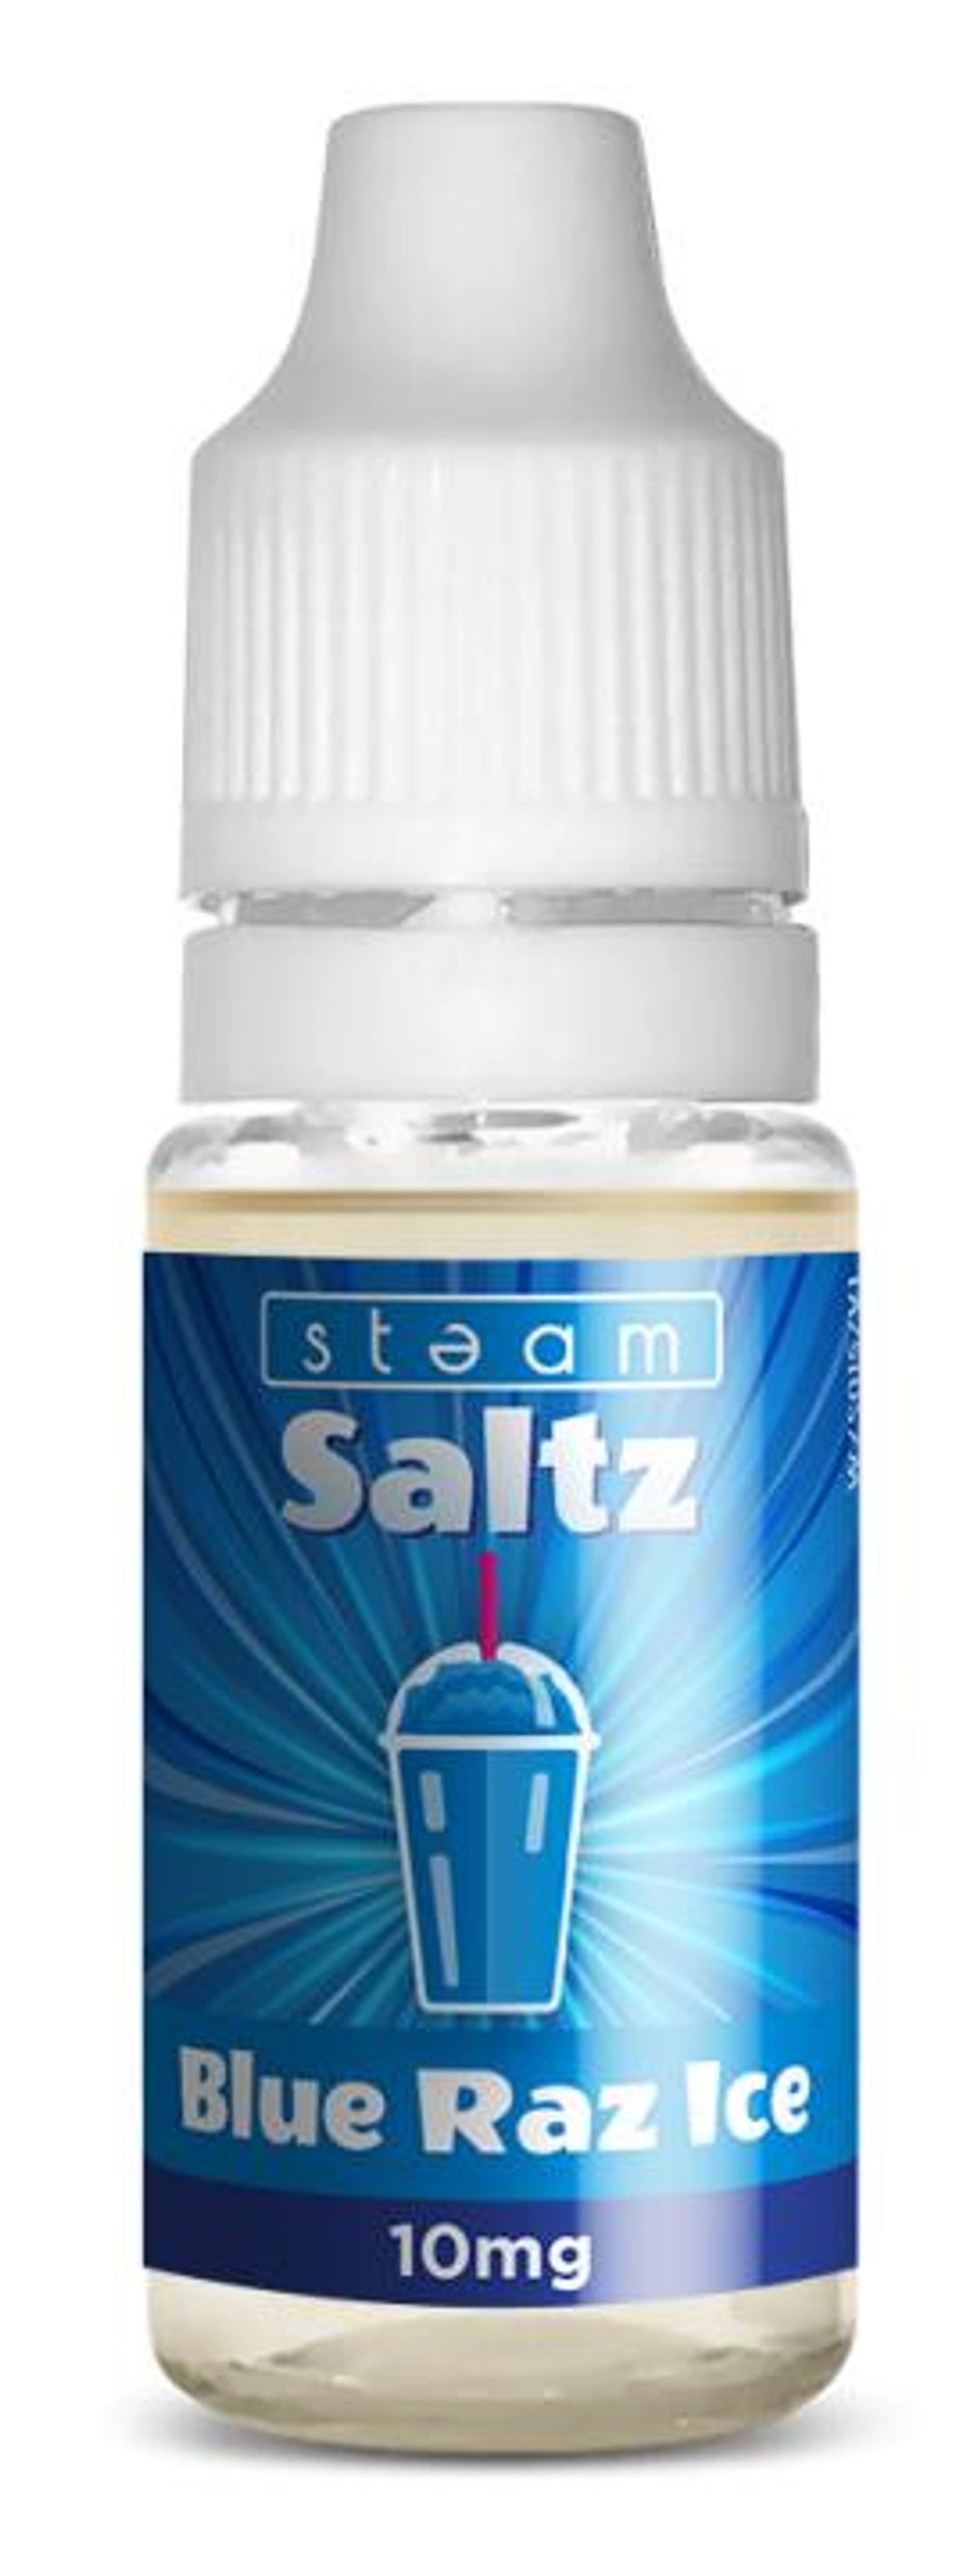 Image of Blue Razz Ice by Steam Saltz